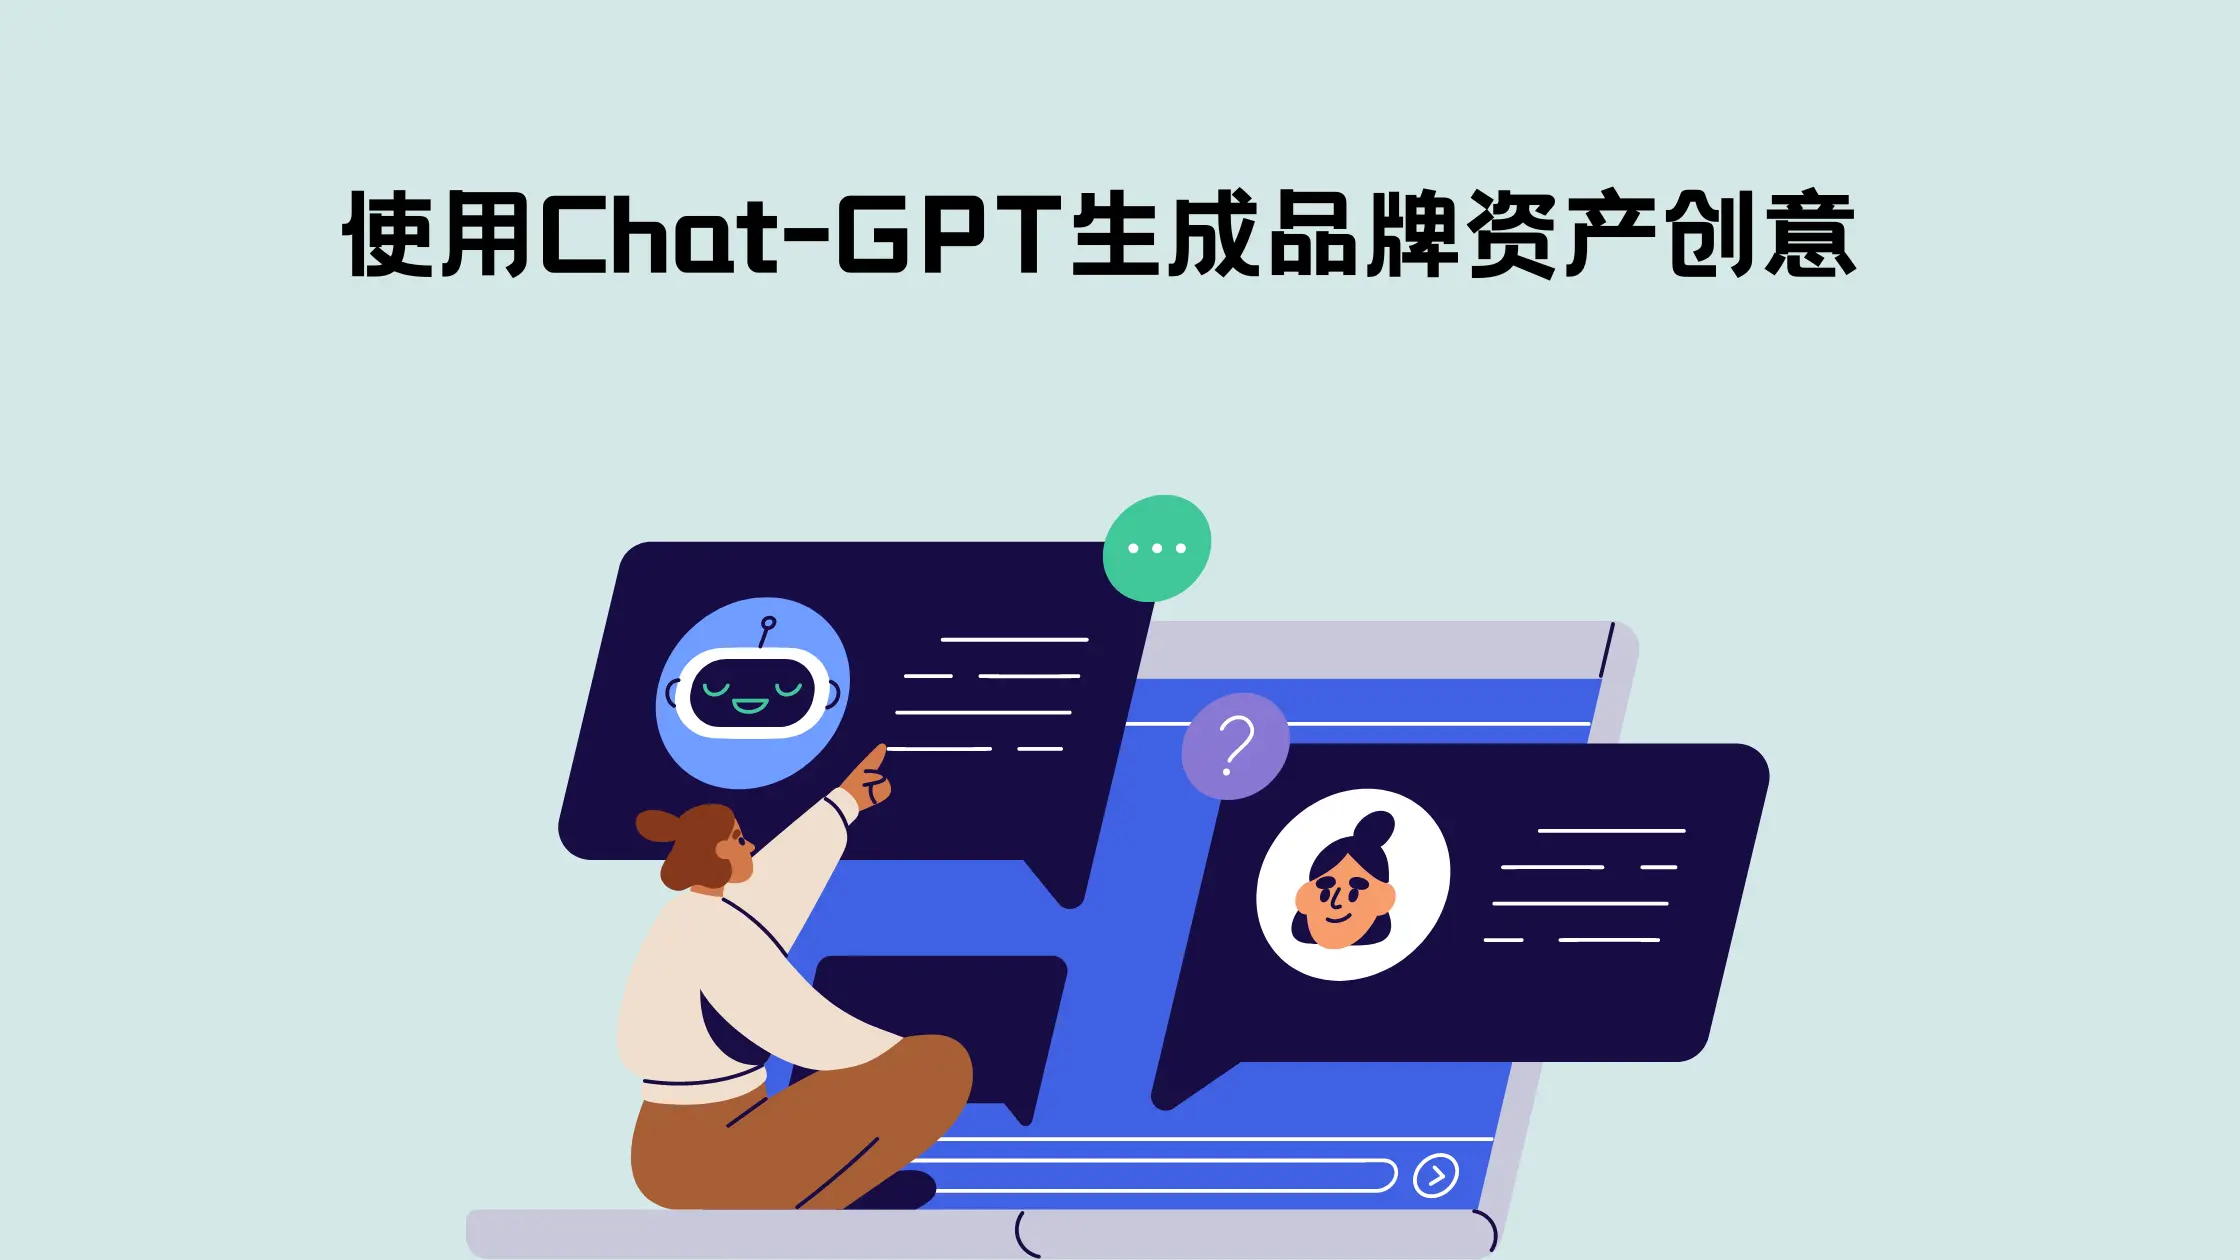 【完全免费】盘点4月5日Chat GPT 国内最新可用镜像 - 凌辰线报网